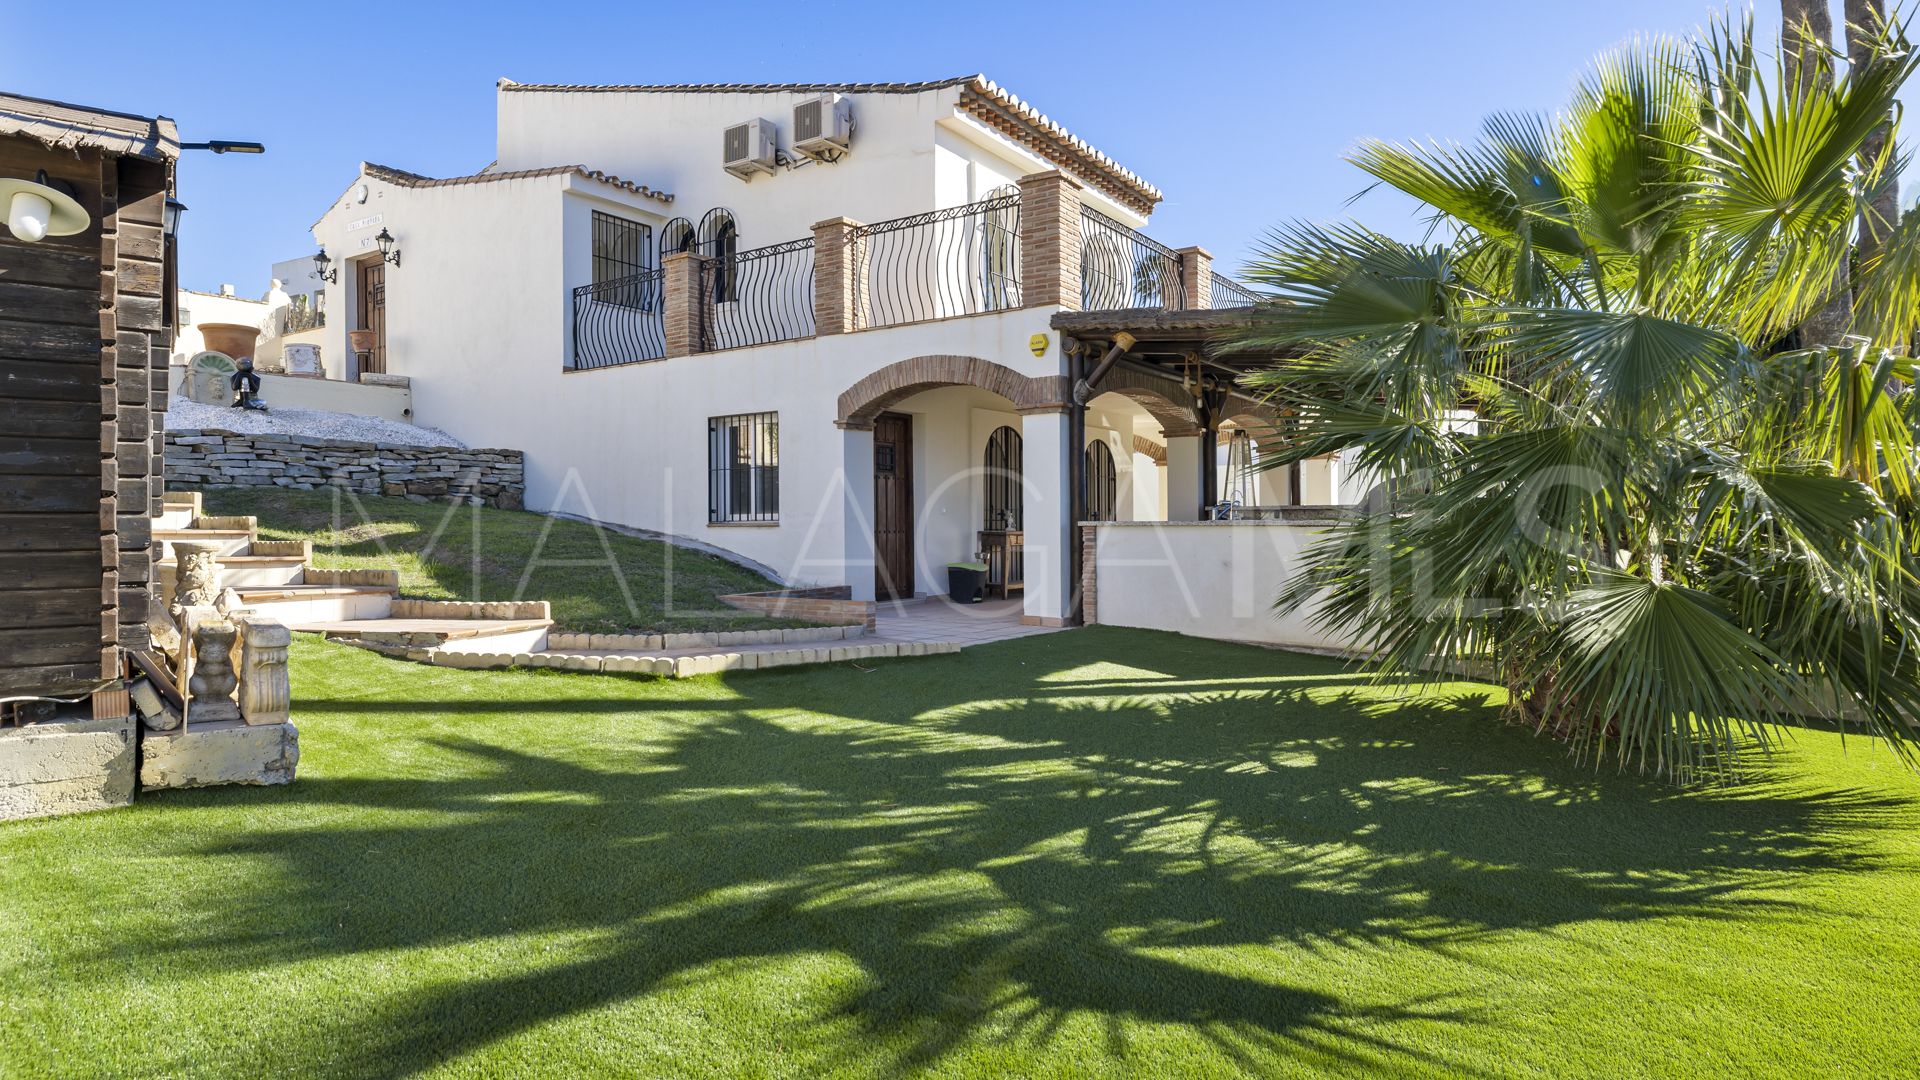 For sale villa in Valle Romano